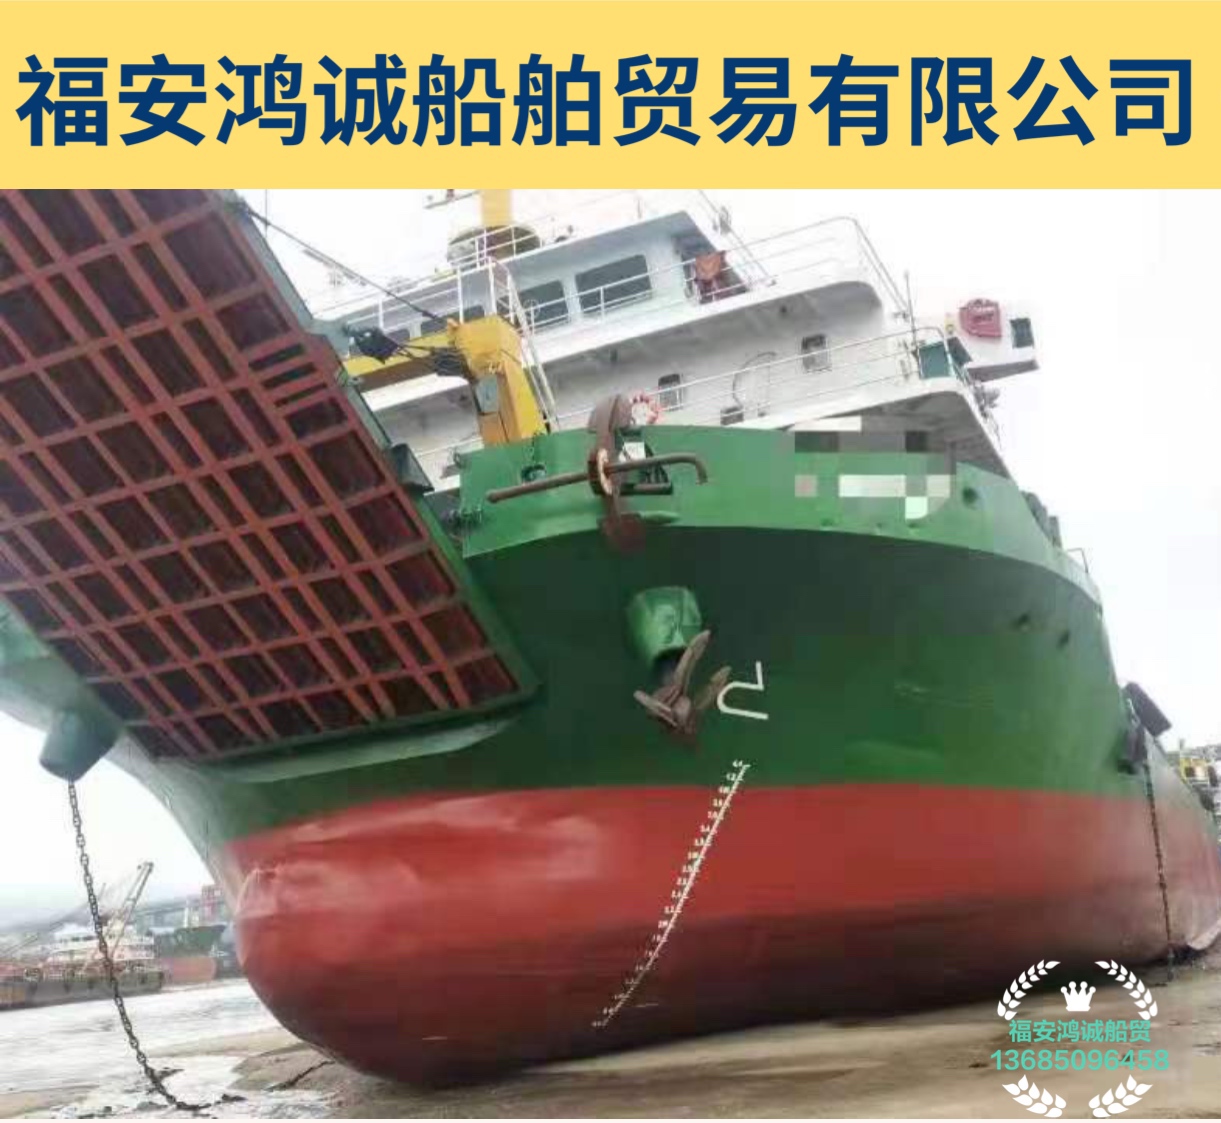 出售2016年造6200吨甲板货船